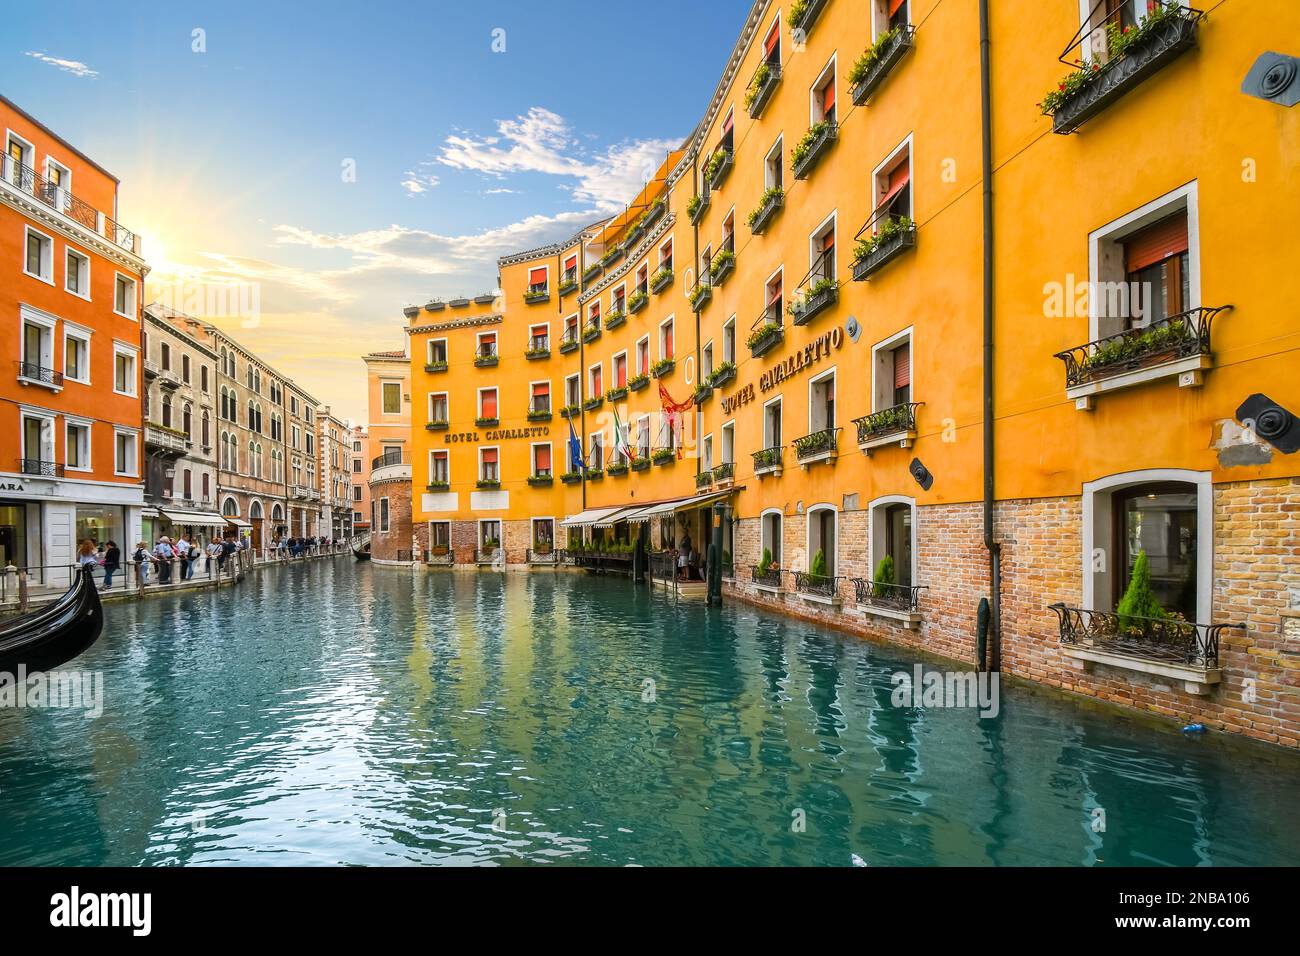 Le bassin d'Orseolo, emplacement d'une station de télécabine, en face d'un hôtel de luxe que les touristes apprécient en fin d'après-midi à Venise, en Italie Banque D'Images